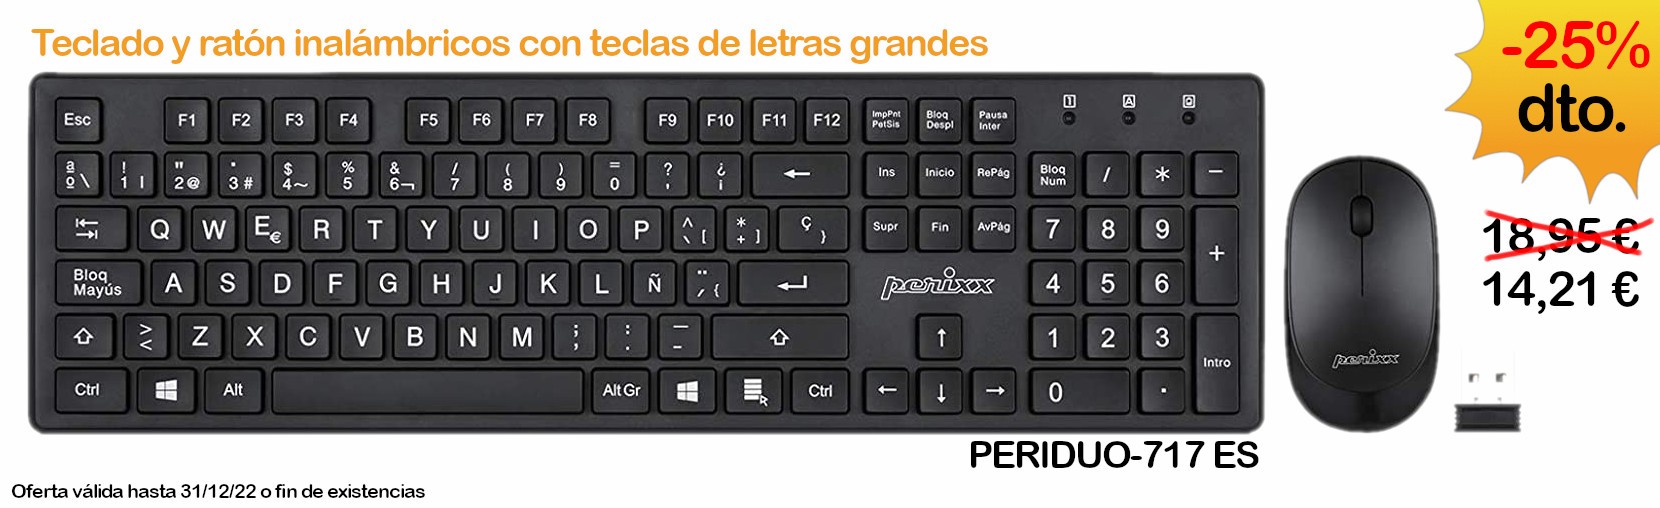 Oferta kit teclado + ratón inalámbricos PERIDUO-717 ES